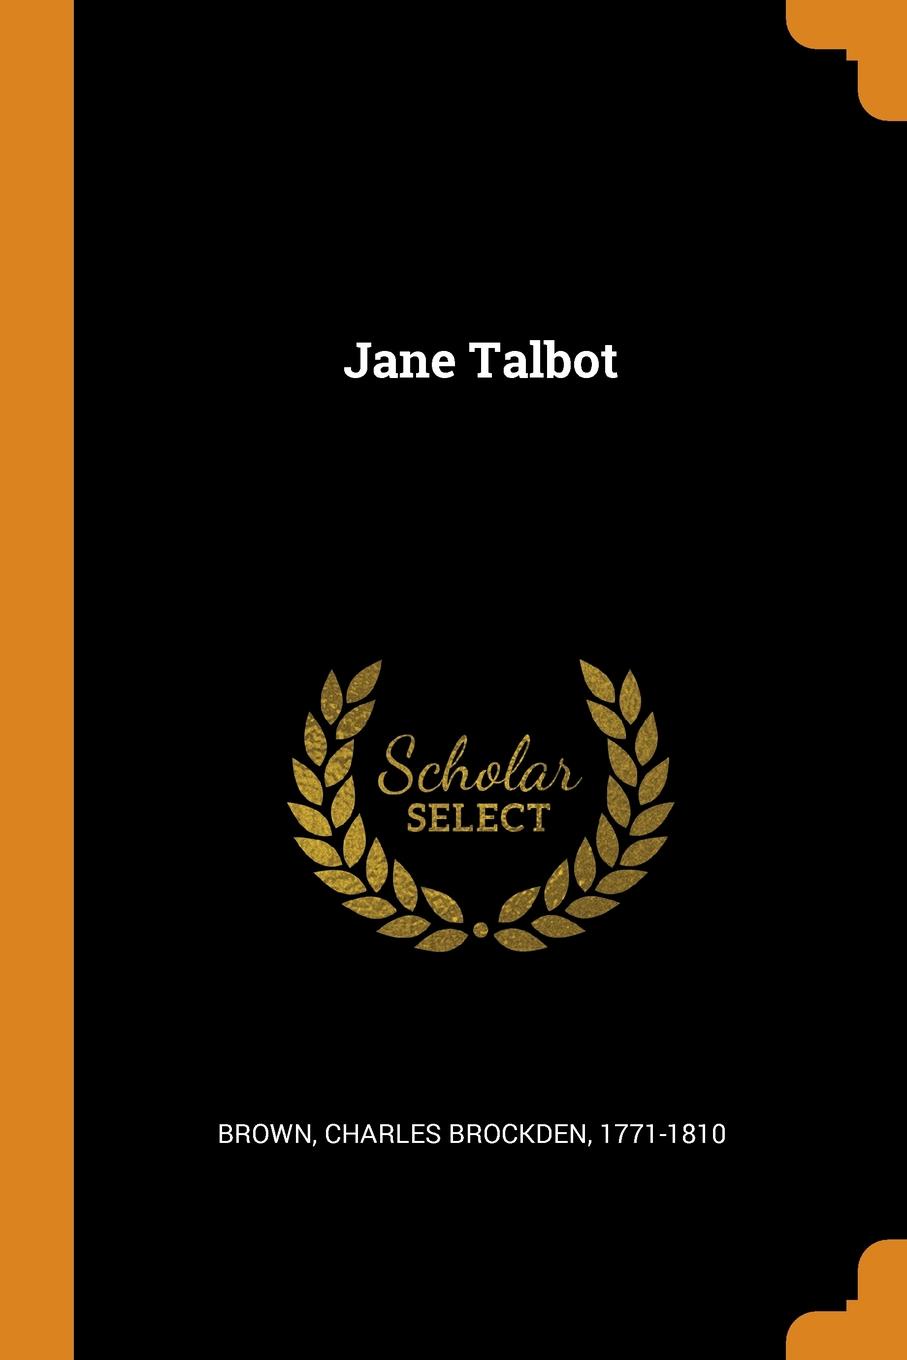 Jane Talbot – Telegraph